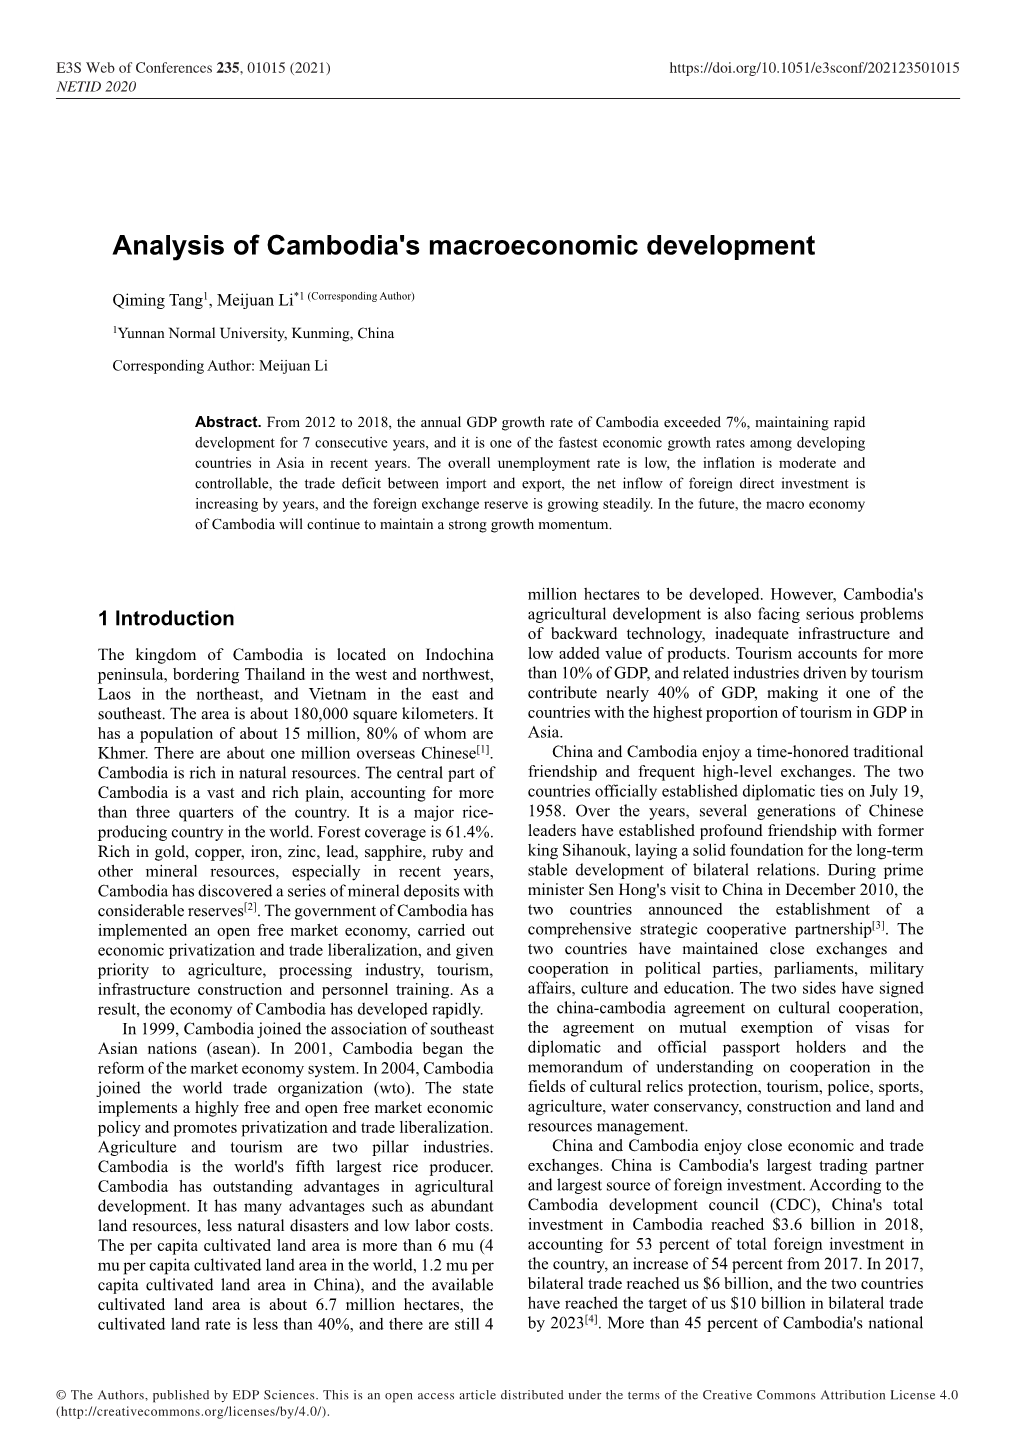 Analysis of Cambodia's Macroeconomic Development